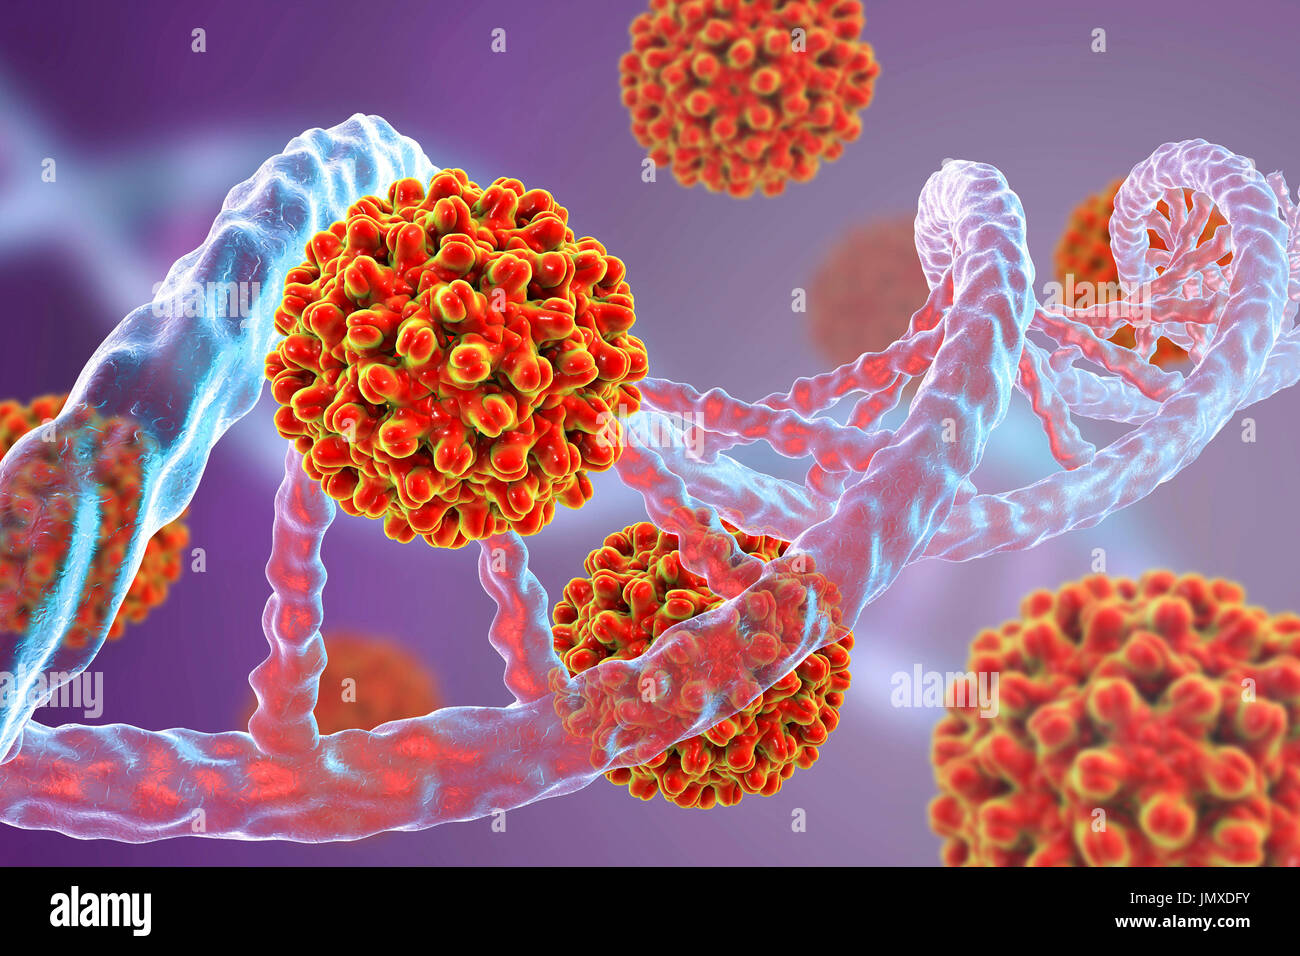 Les virus de l'hépatite B et de l'ADN. Image conceptuelle d'oncogenèse virale. Les virus de l'hépatite B (VHB) peut s'intégrer dans l'ADN hôte comme mutagènes d'origine de l'activation d'un proto-oncogène cellulaire. Intégration de l'ADN viral dans le génome humain est considéré comme un événement précoce dans le processus cancérigène et peut entraîner, par mutagenèse insertionnelle, la modification de l'expression des gènes et de l'instabilité chromosomique. Banque D'Images